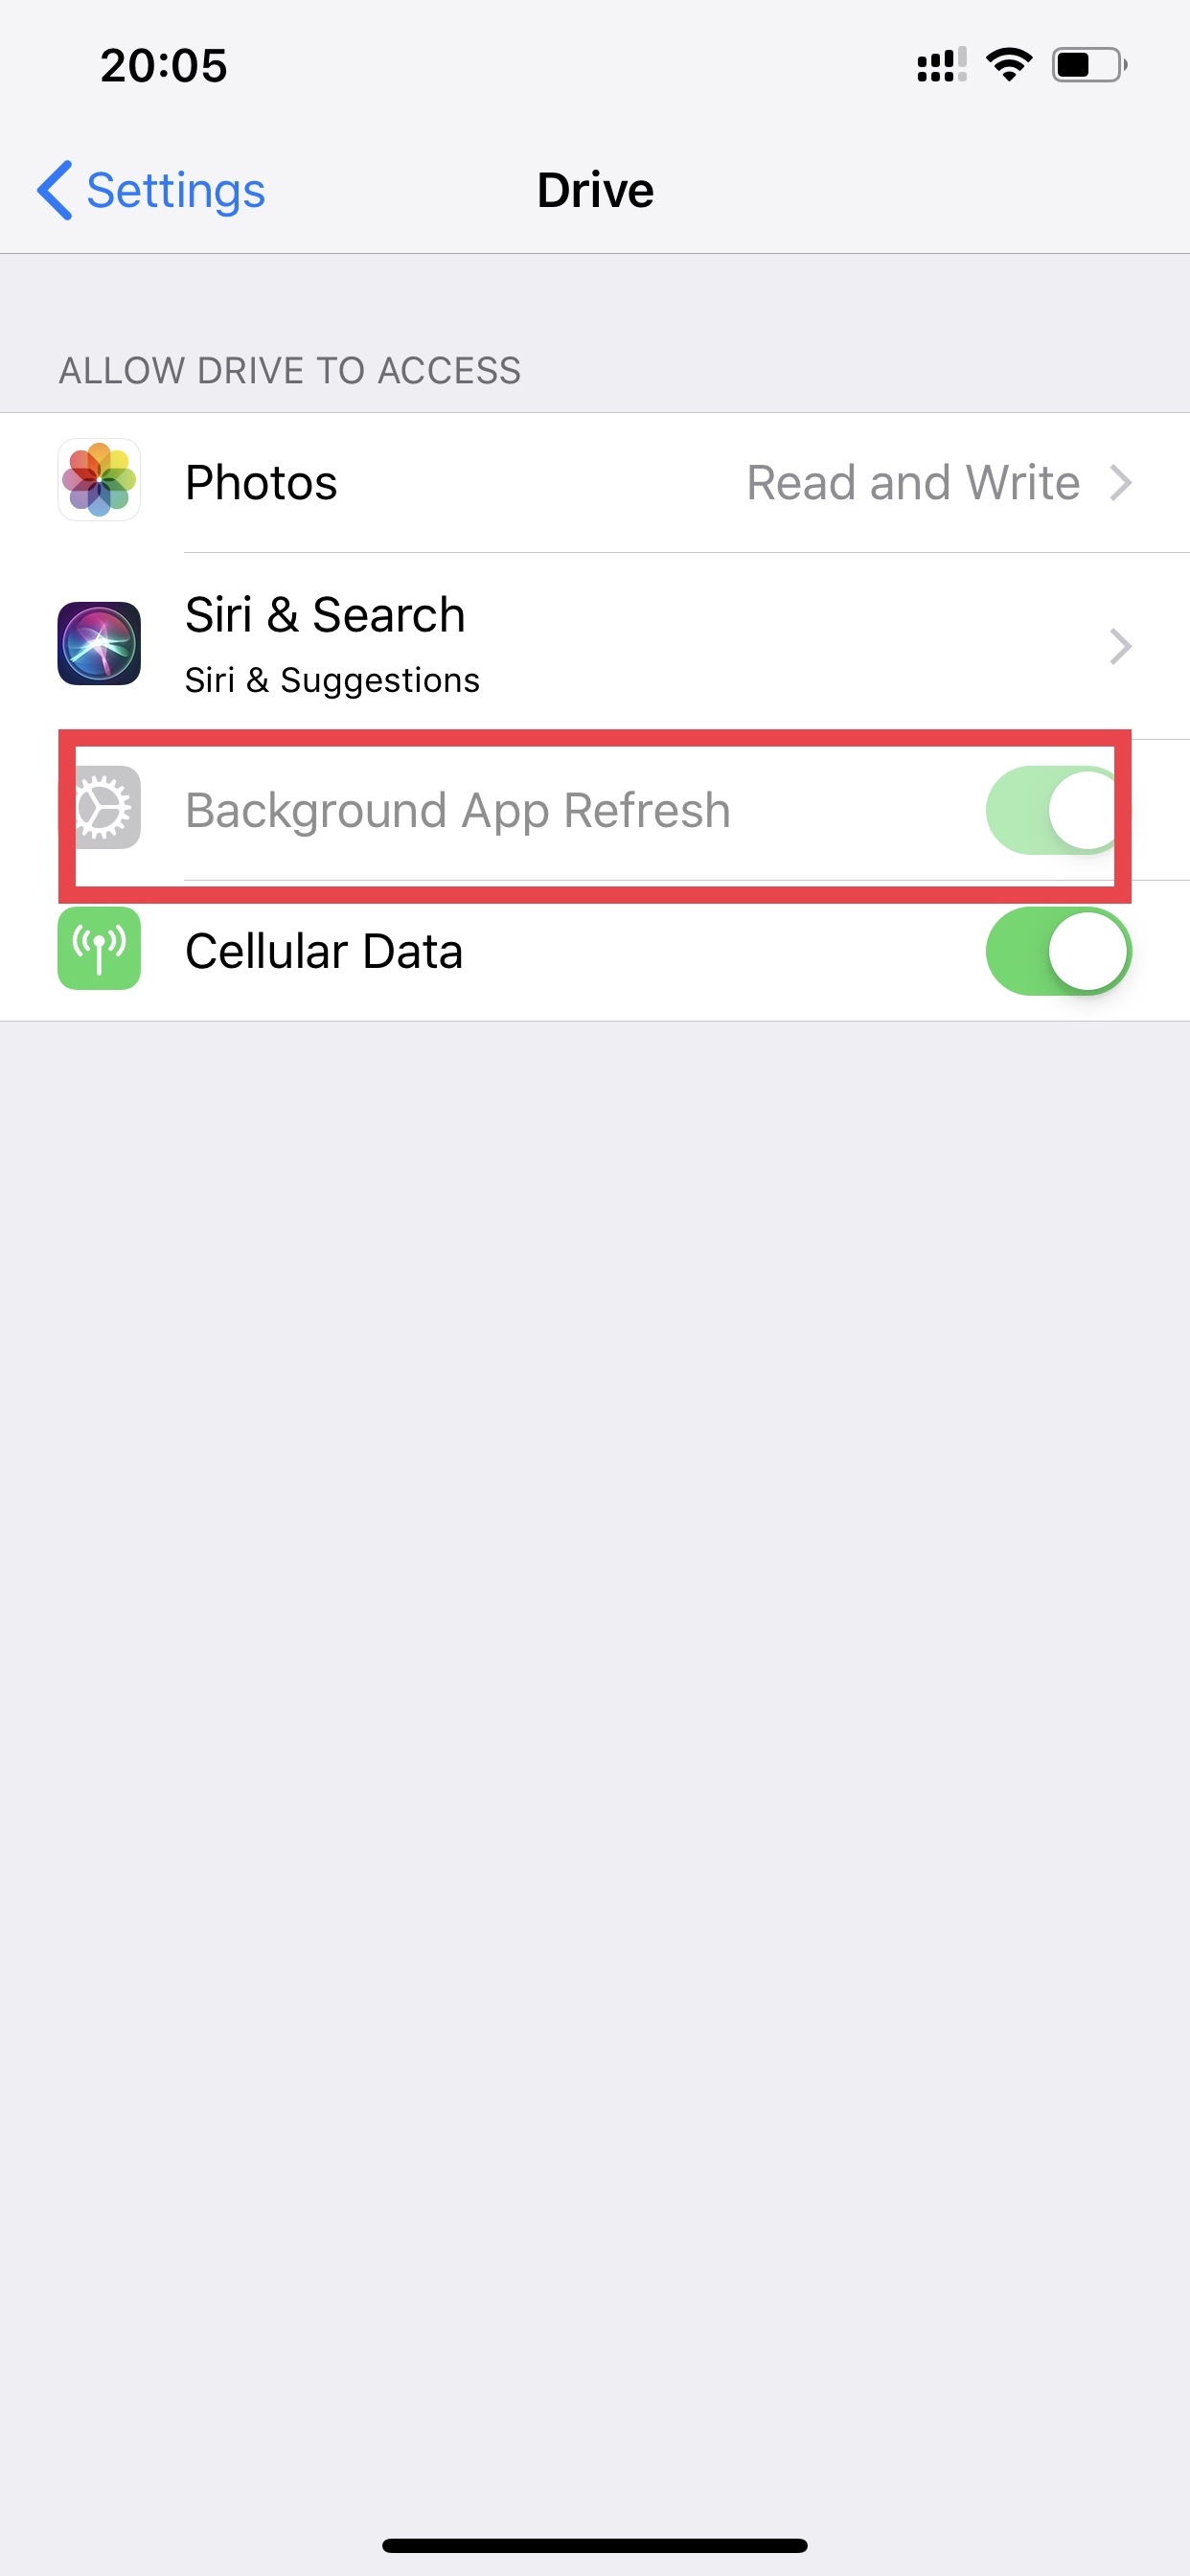 iOS cơ bản] Tắt Background app refresh để máy đỡ hao pin/DATA hơn